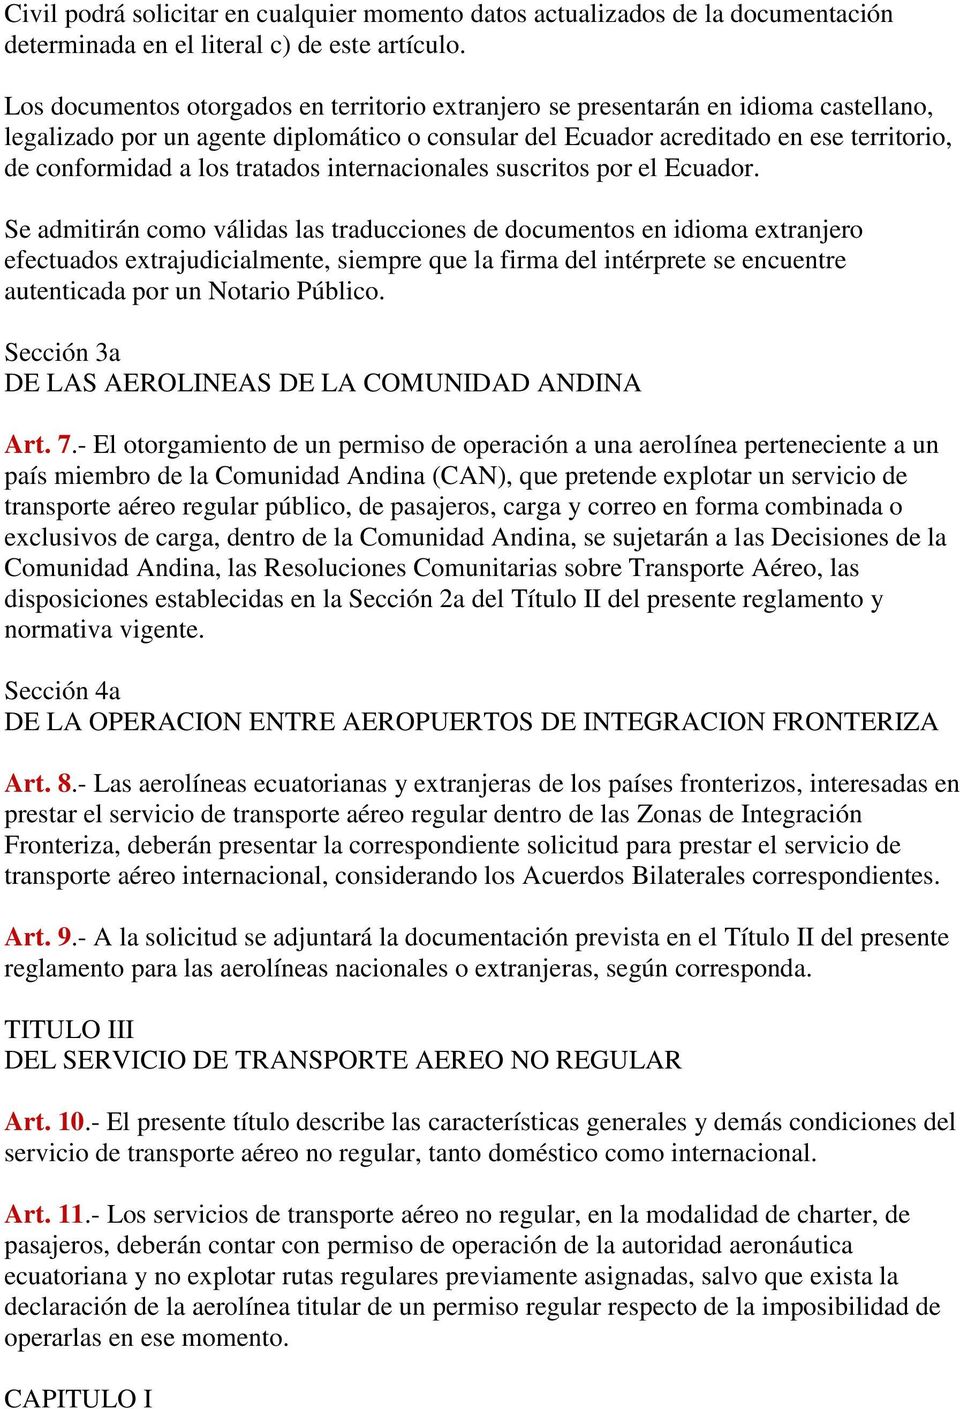 tratados internacionales suscritos por el Ecuador.